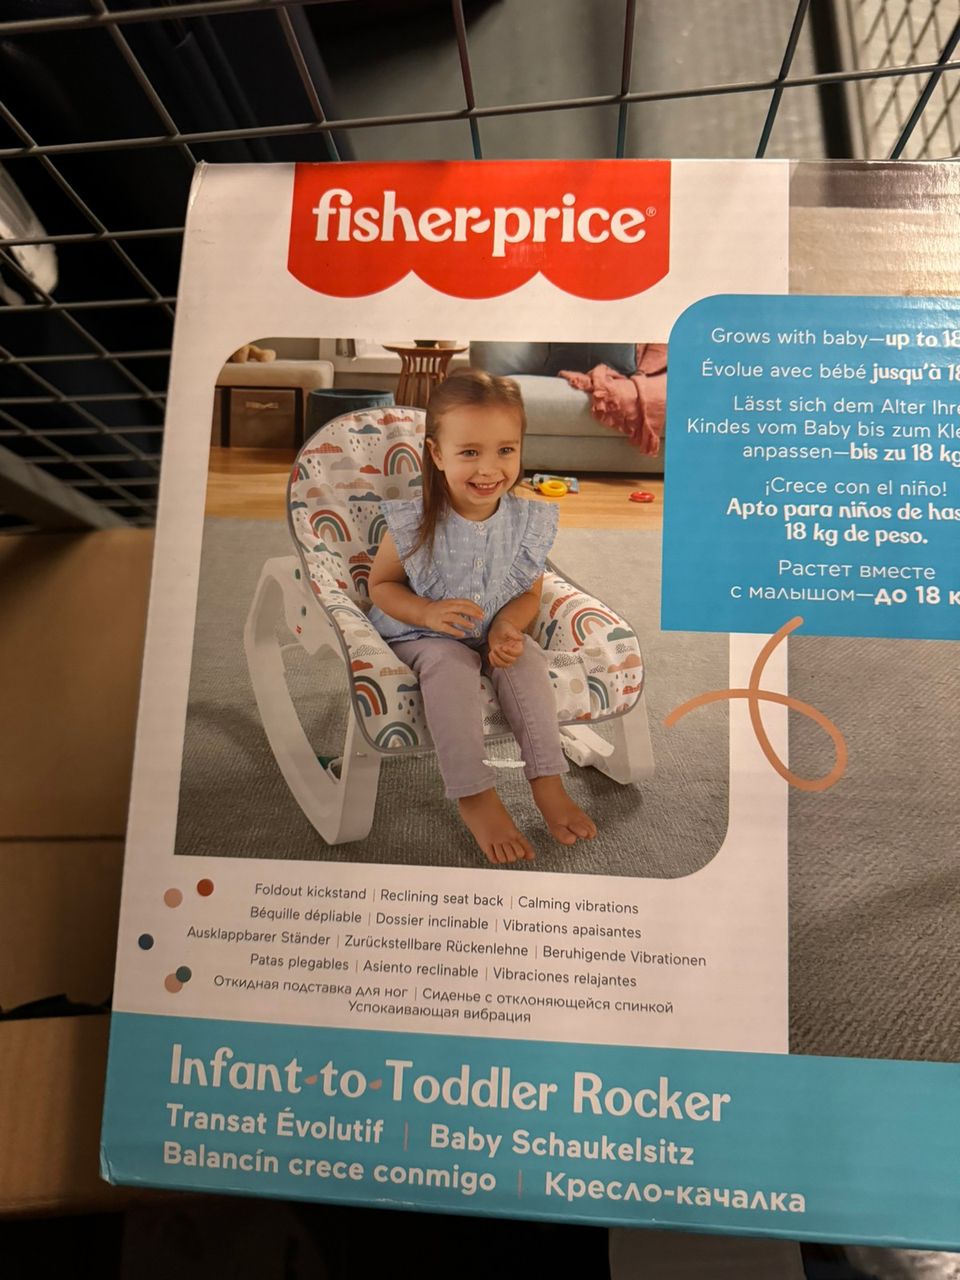 Infant to Toddler Rocker / lapsesta Toddler rokkariin